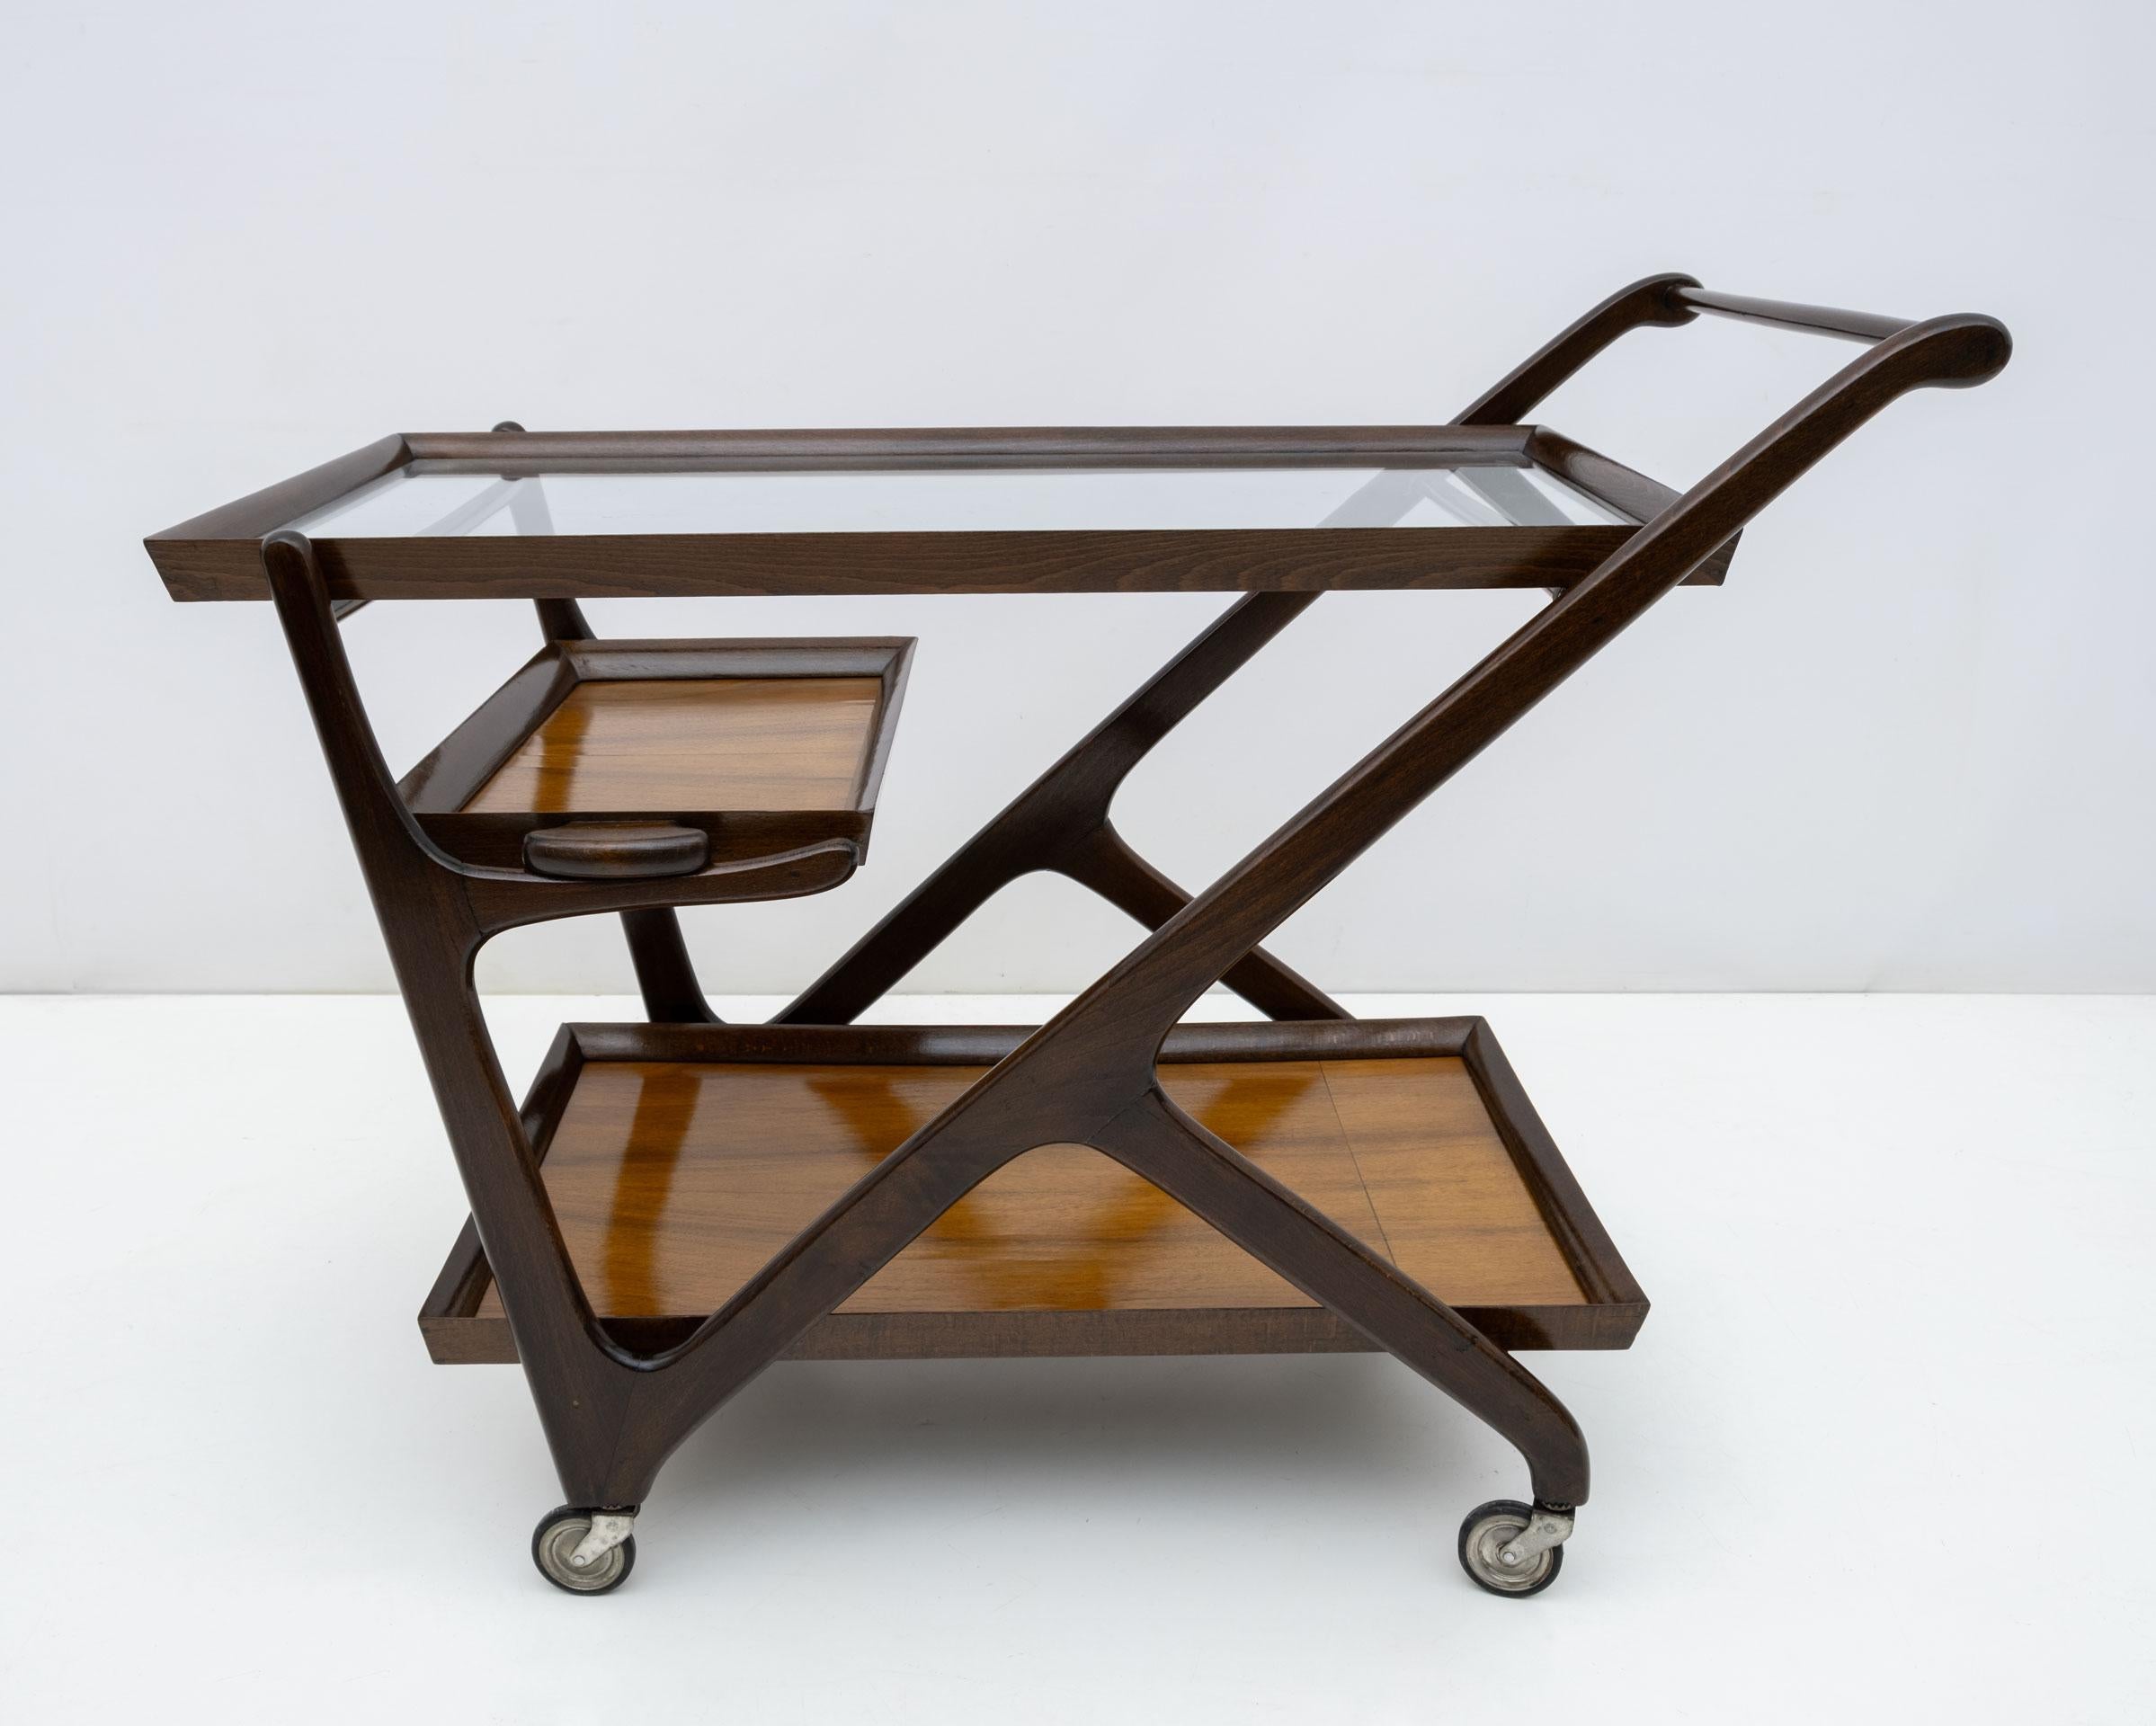 Dieser Barwagen aus Nussbaumholz wurde in den 1950er Jahren von Cesare Lacca für Cassina entworfen. Wie es das Schicksal so will, ist er mit zwei herausnehmbaren Tabletts und einer oberen, stets abnehmbaren Glasplatte ausgestattet.
Der Barwagen